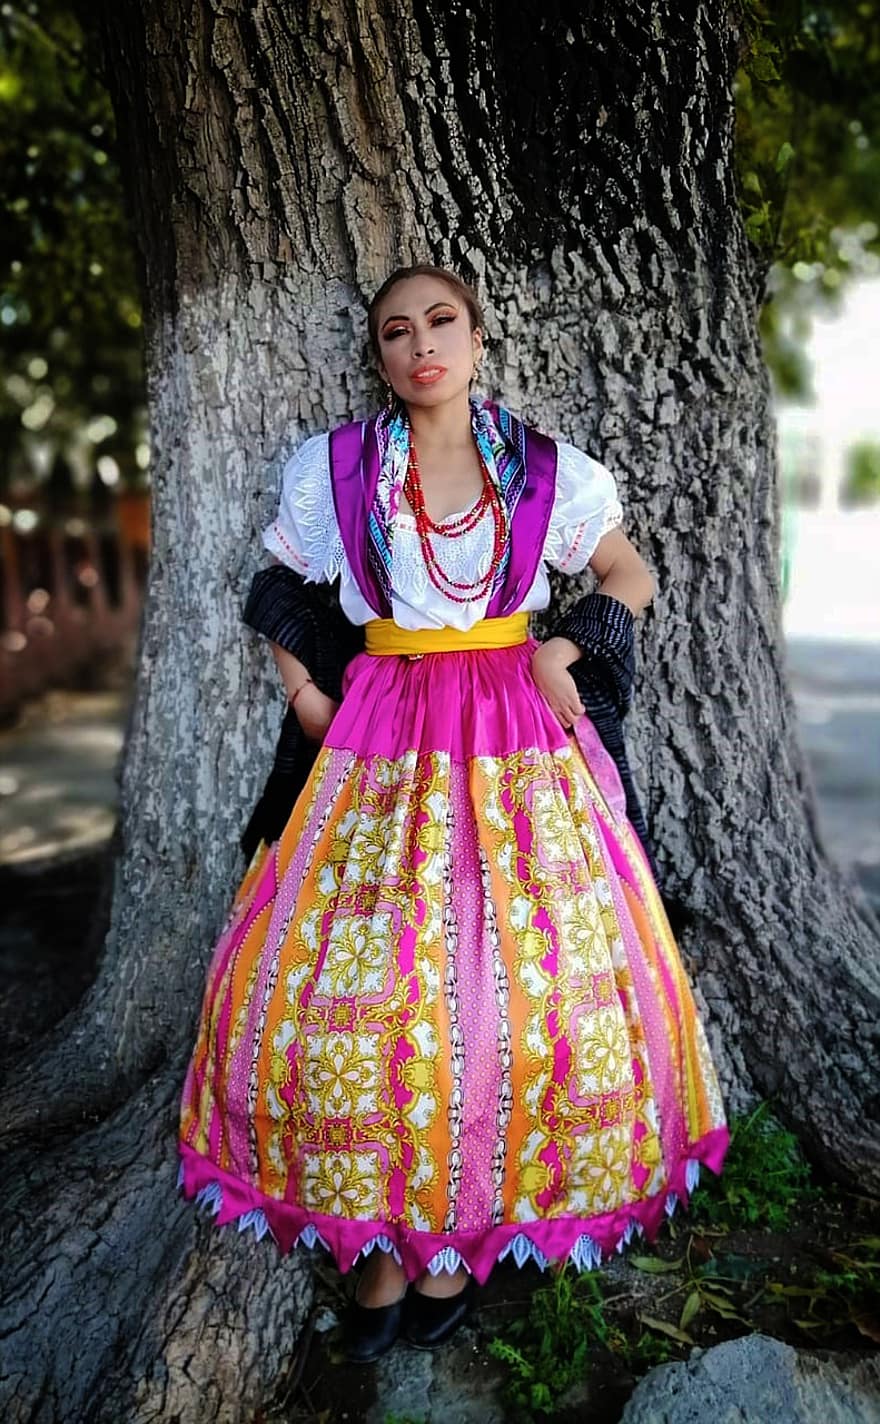 kvinna, dansare, folklore, dansa, traditionell, tradition, kostym, klänning